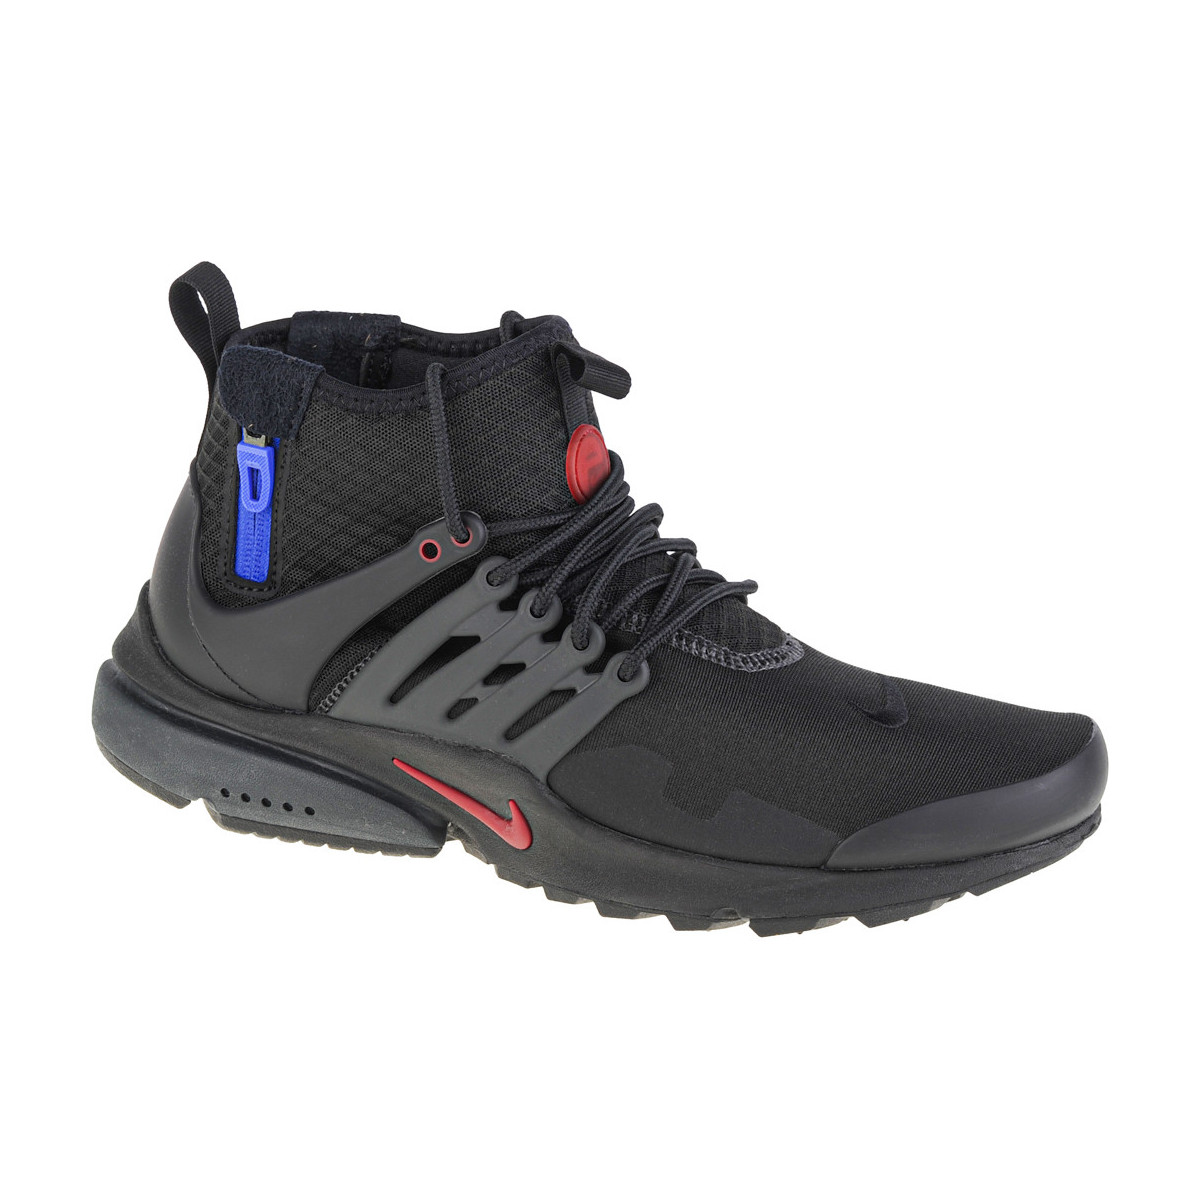 Παπούτσια Άνδρας Χαμηλά Sneakers Nike Air Presto Mid Utility Black